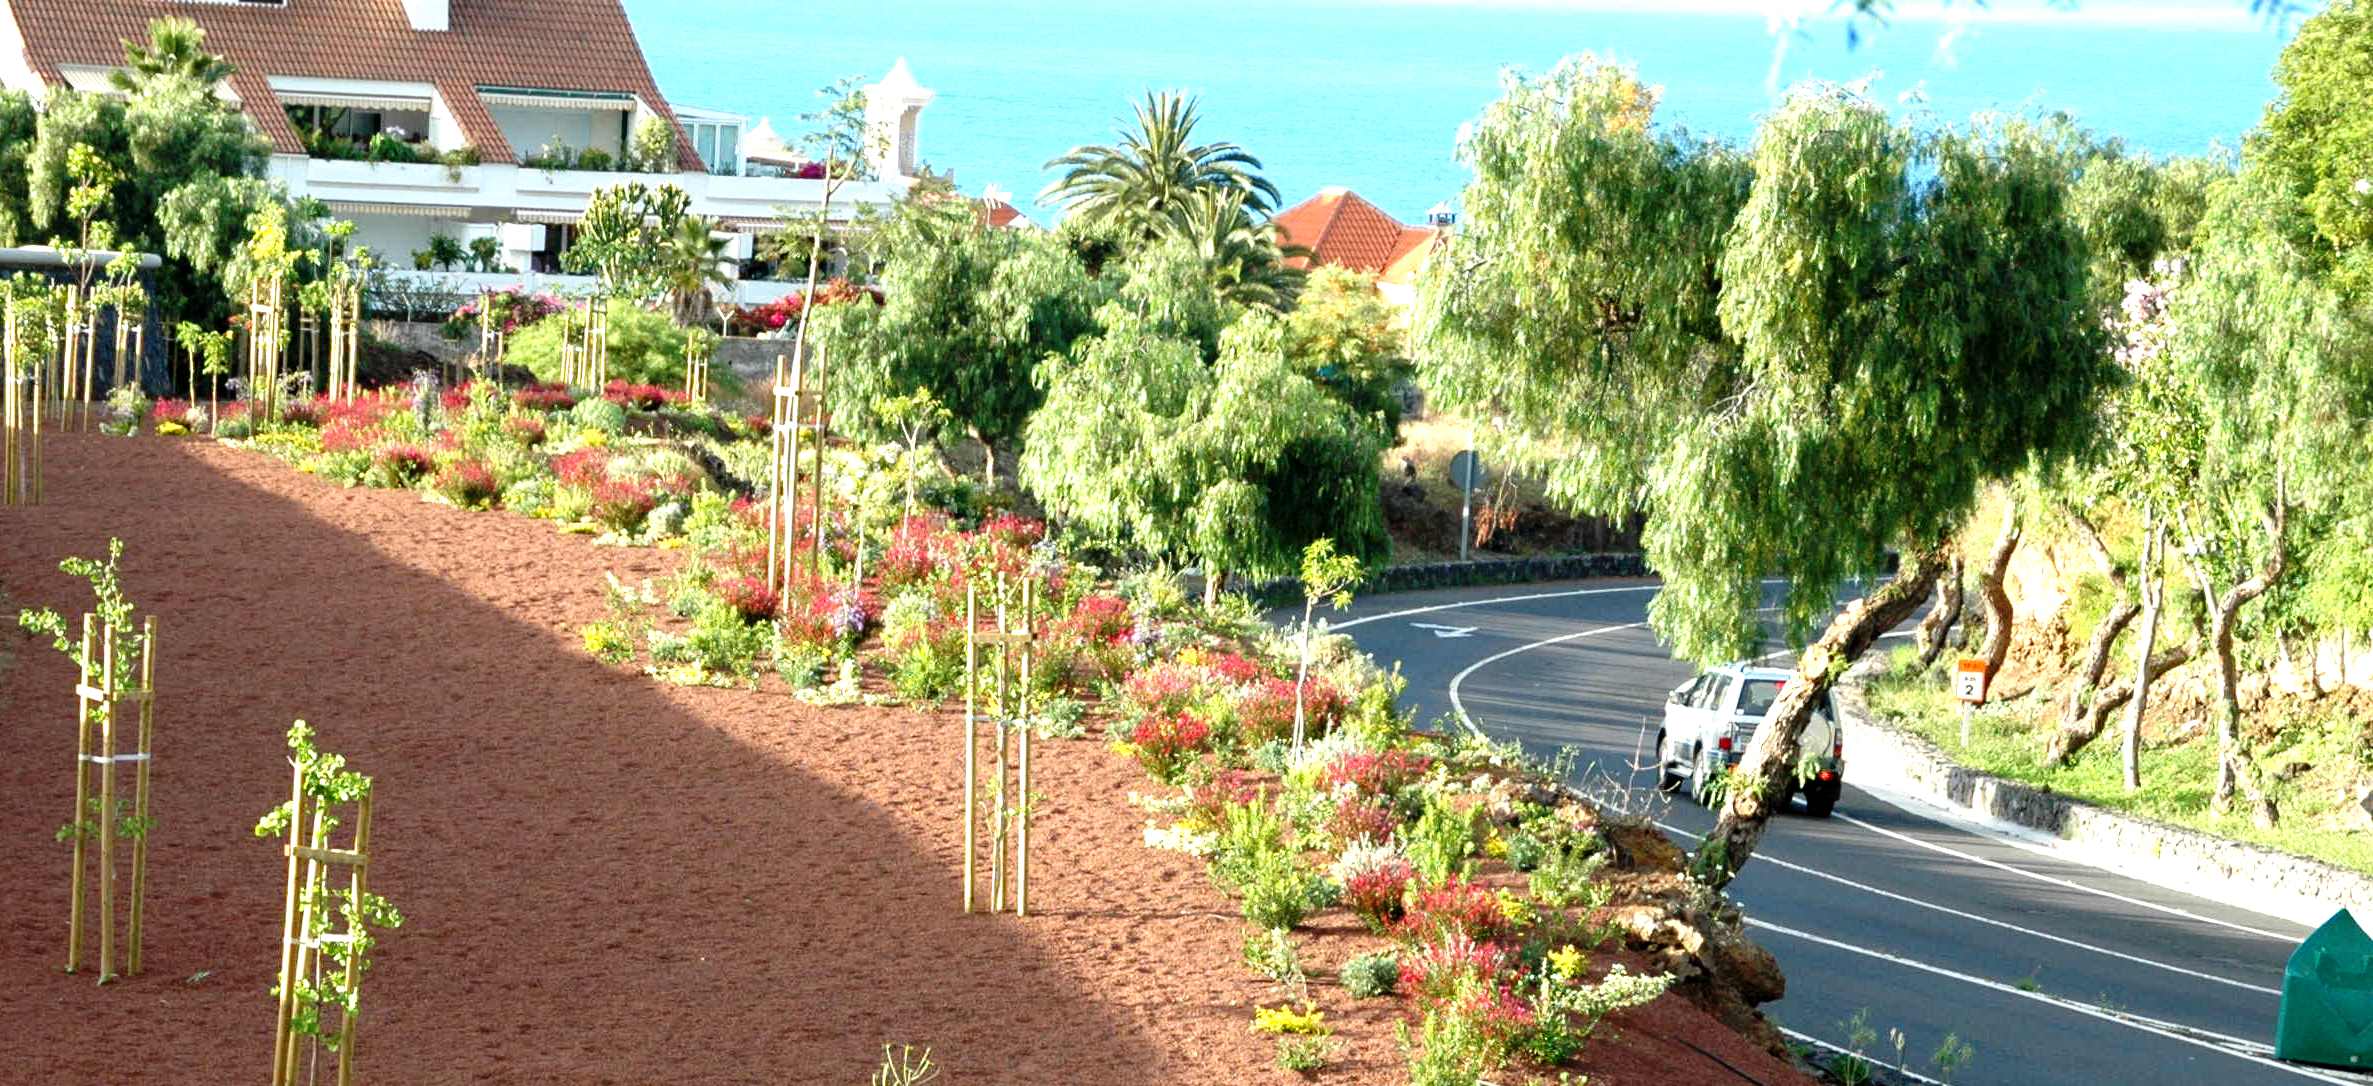 Jardinería pública. Enlace viario Jardín Botánico. Tenerife